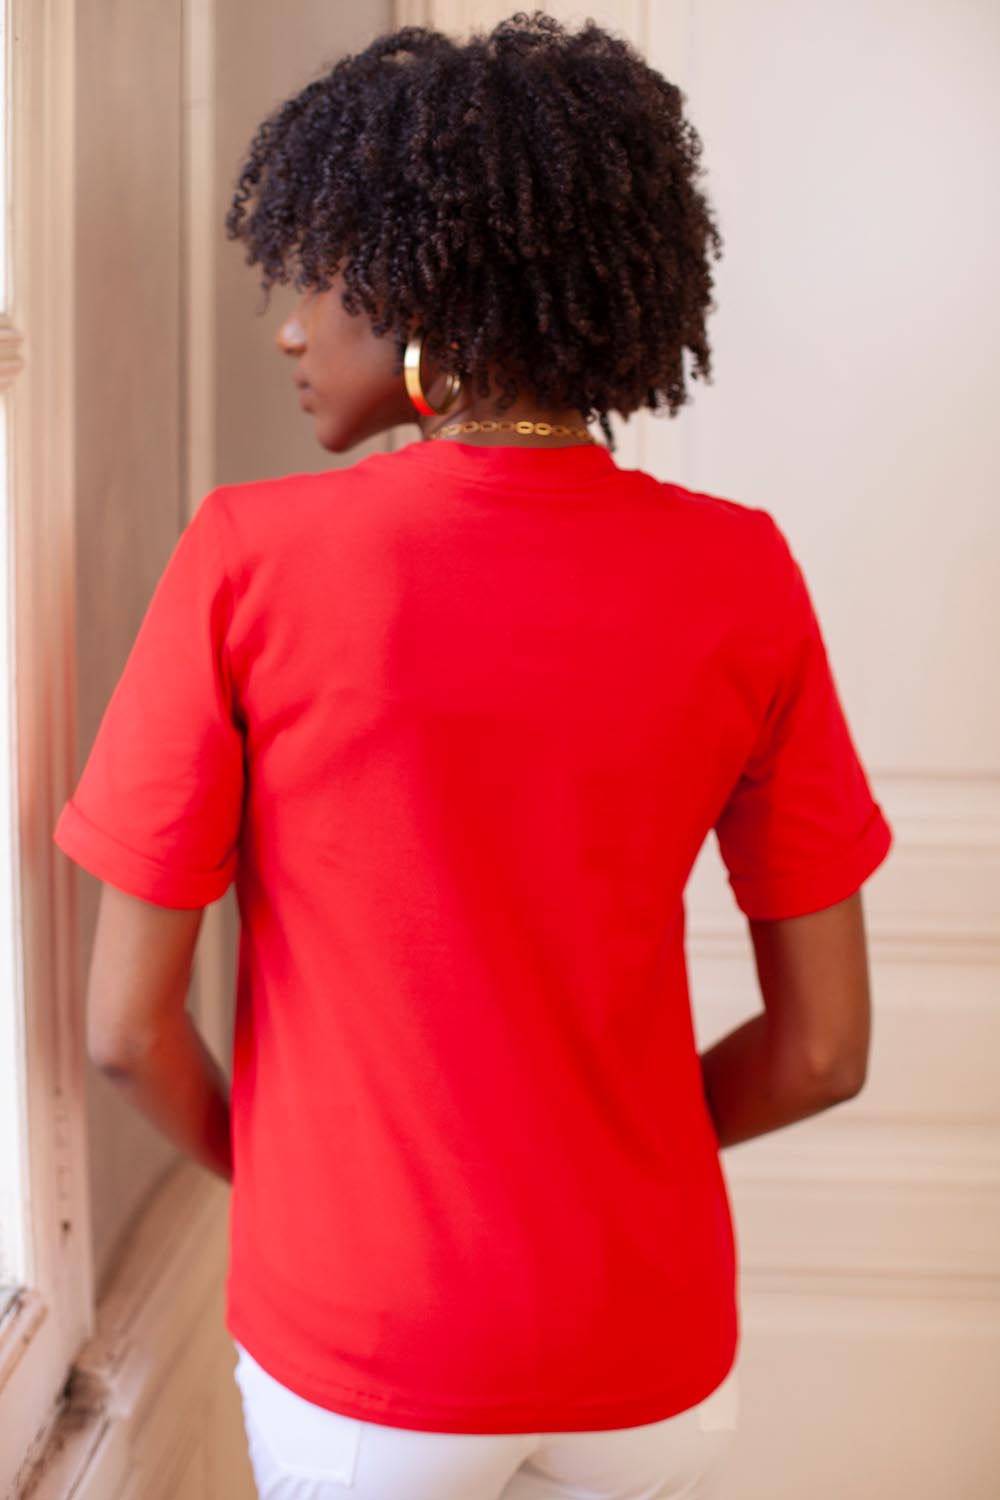 Tee-shirt femme couleur rouge, manches courtes, idéal pour le printemps été. Conception et fabrication françaises.